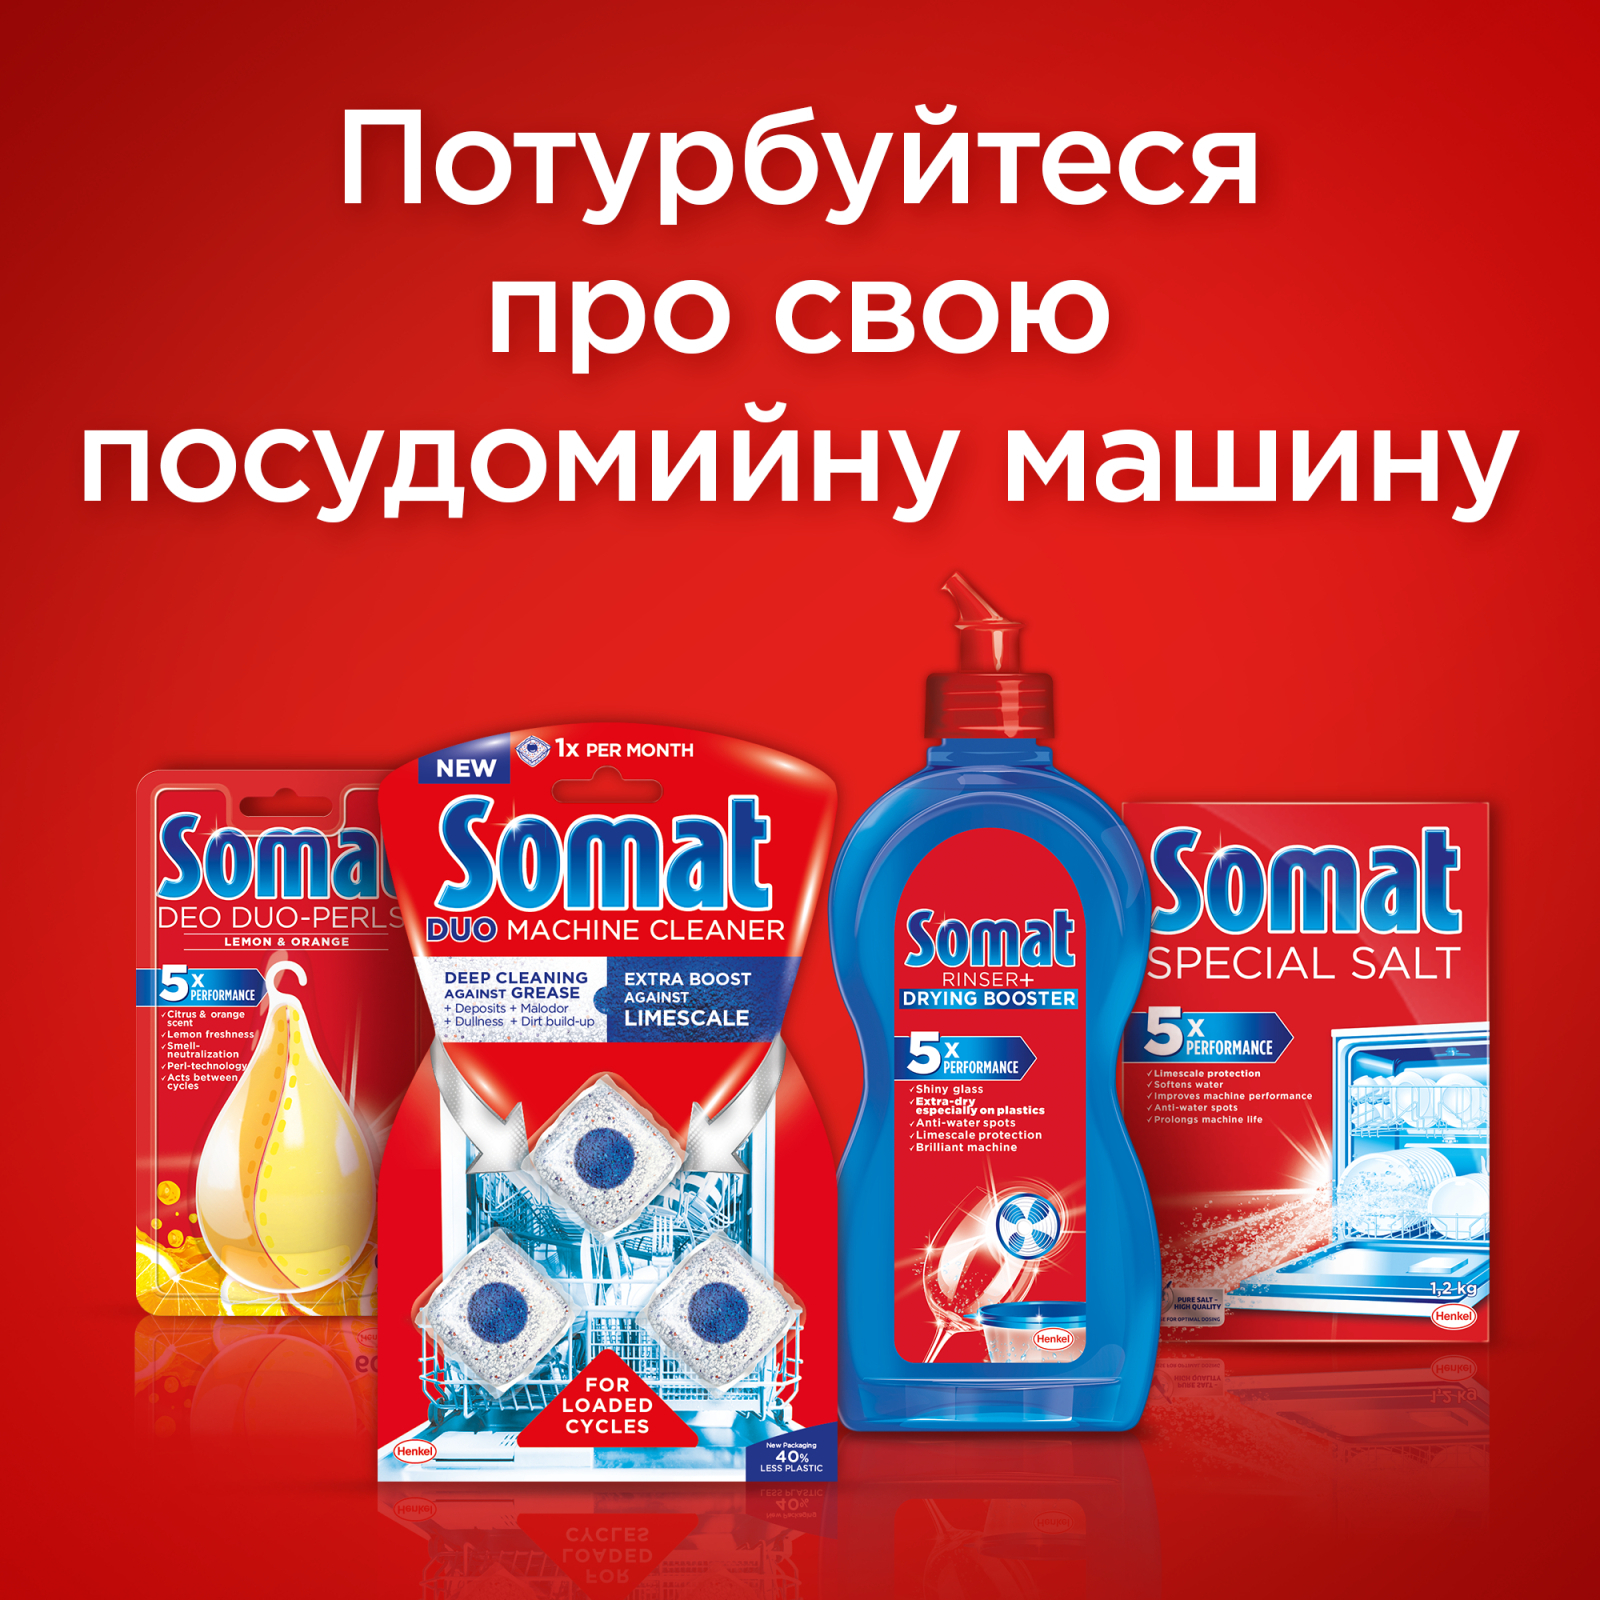 Таблетки для посудомоечных машин Somat All in 1 48 шт. (9000101591668) изображение 9